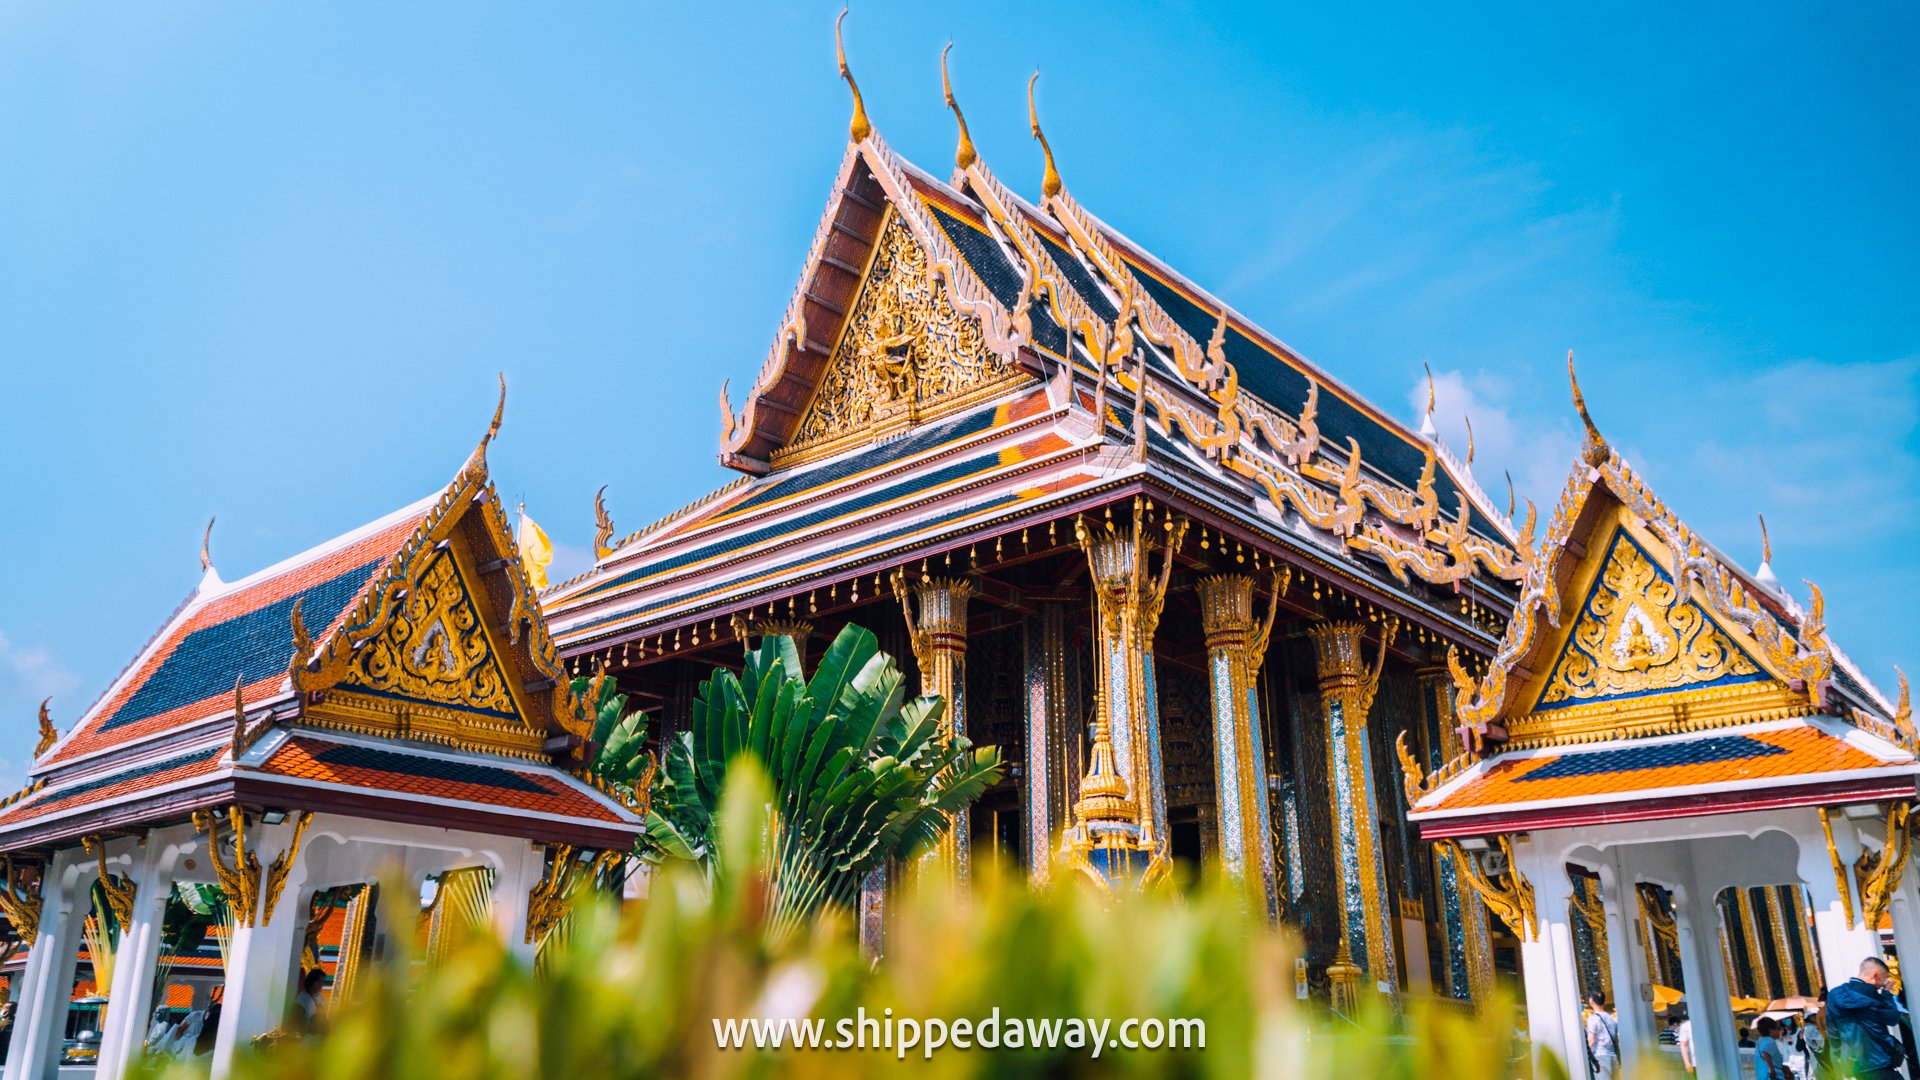 Beautiful architecture at The Grand Palace Bangkok Thailand, Grand Palace Bangkok Travel Guide, Things to do in the Grand Palace in Bangkok